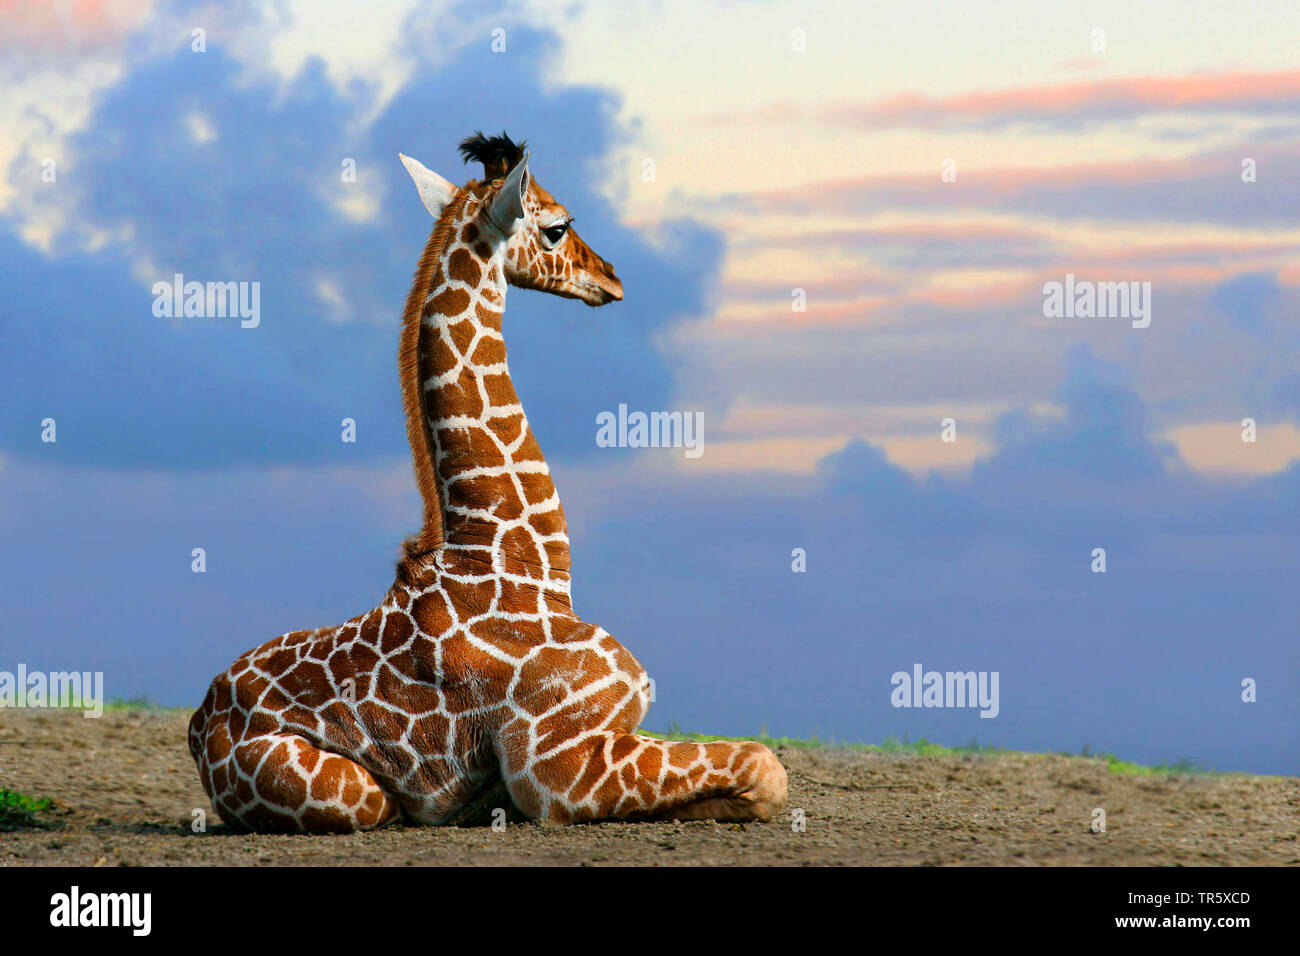 Girafe (Giraffa camelopardalis), bébé girafe assis sur le sol et à la vue de côté, curieux, l'Afrique Banque D'Images